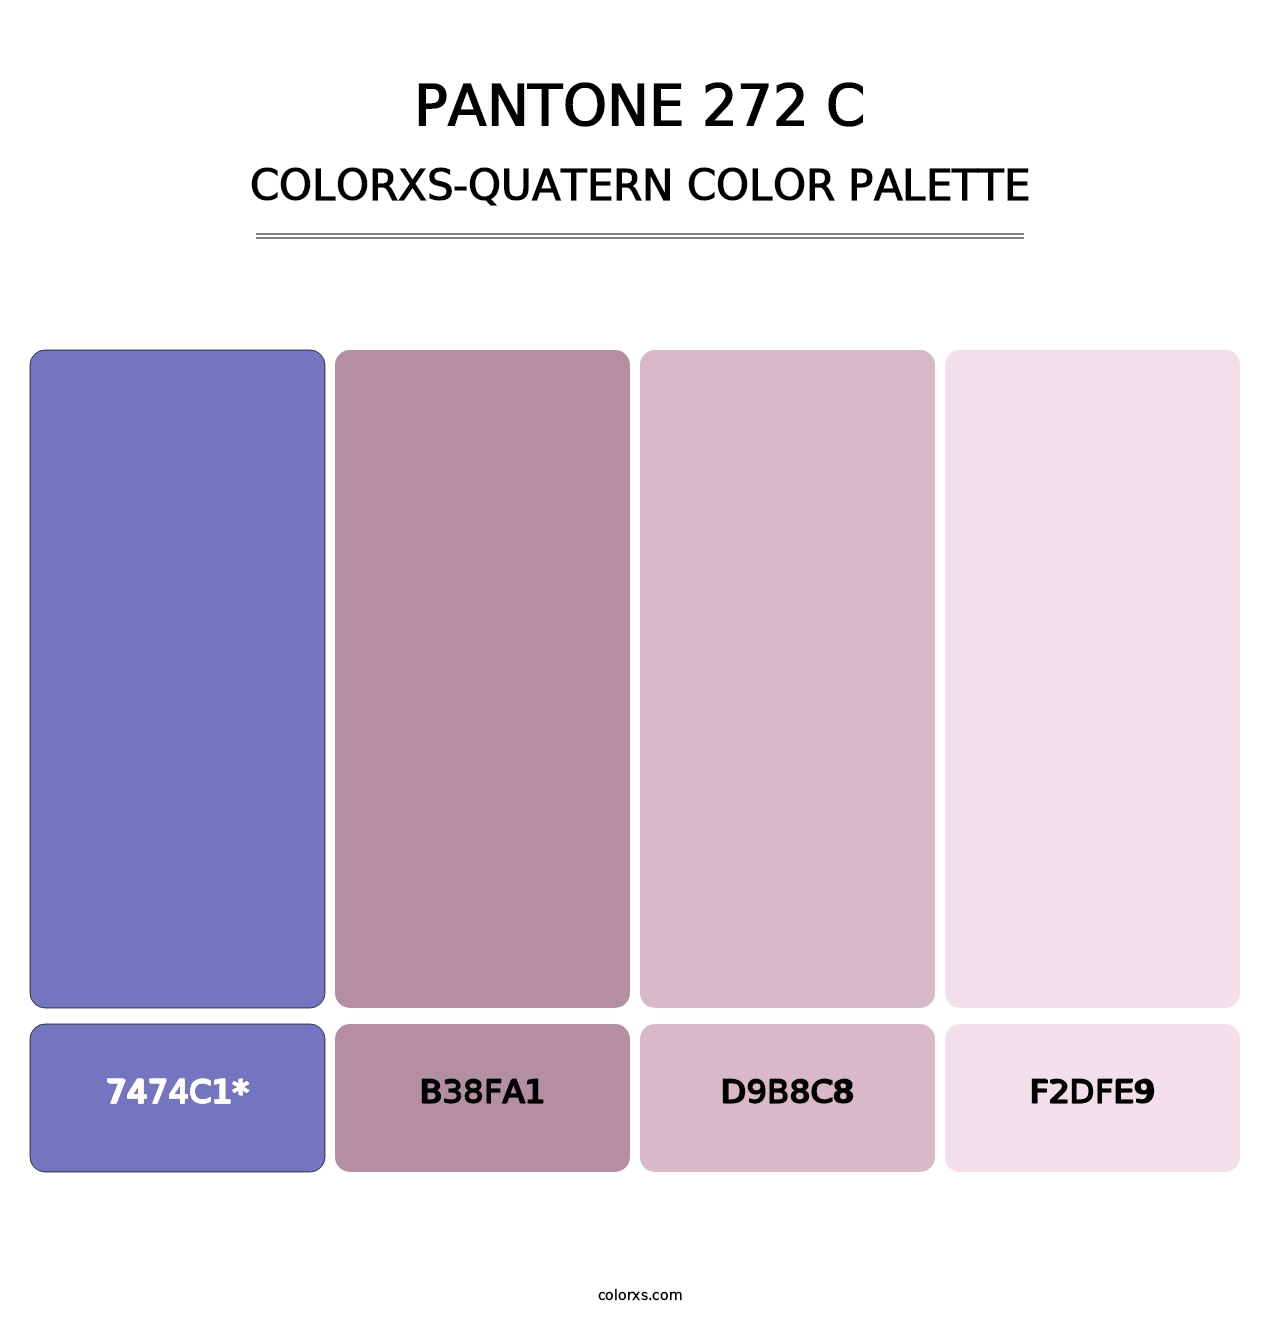 PANTONE 272 C - Colorxs Quatern Palette